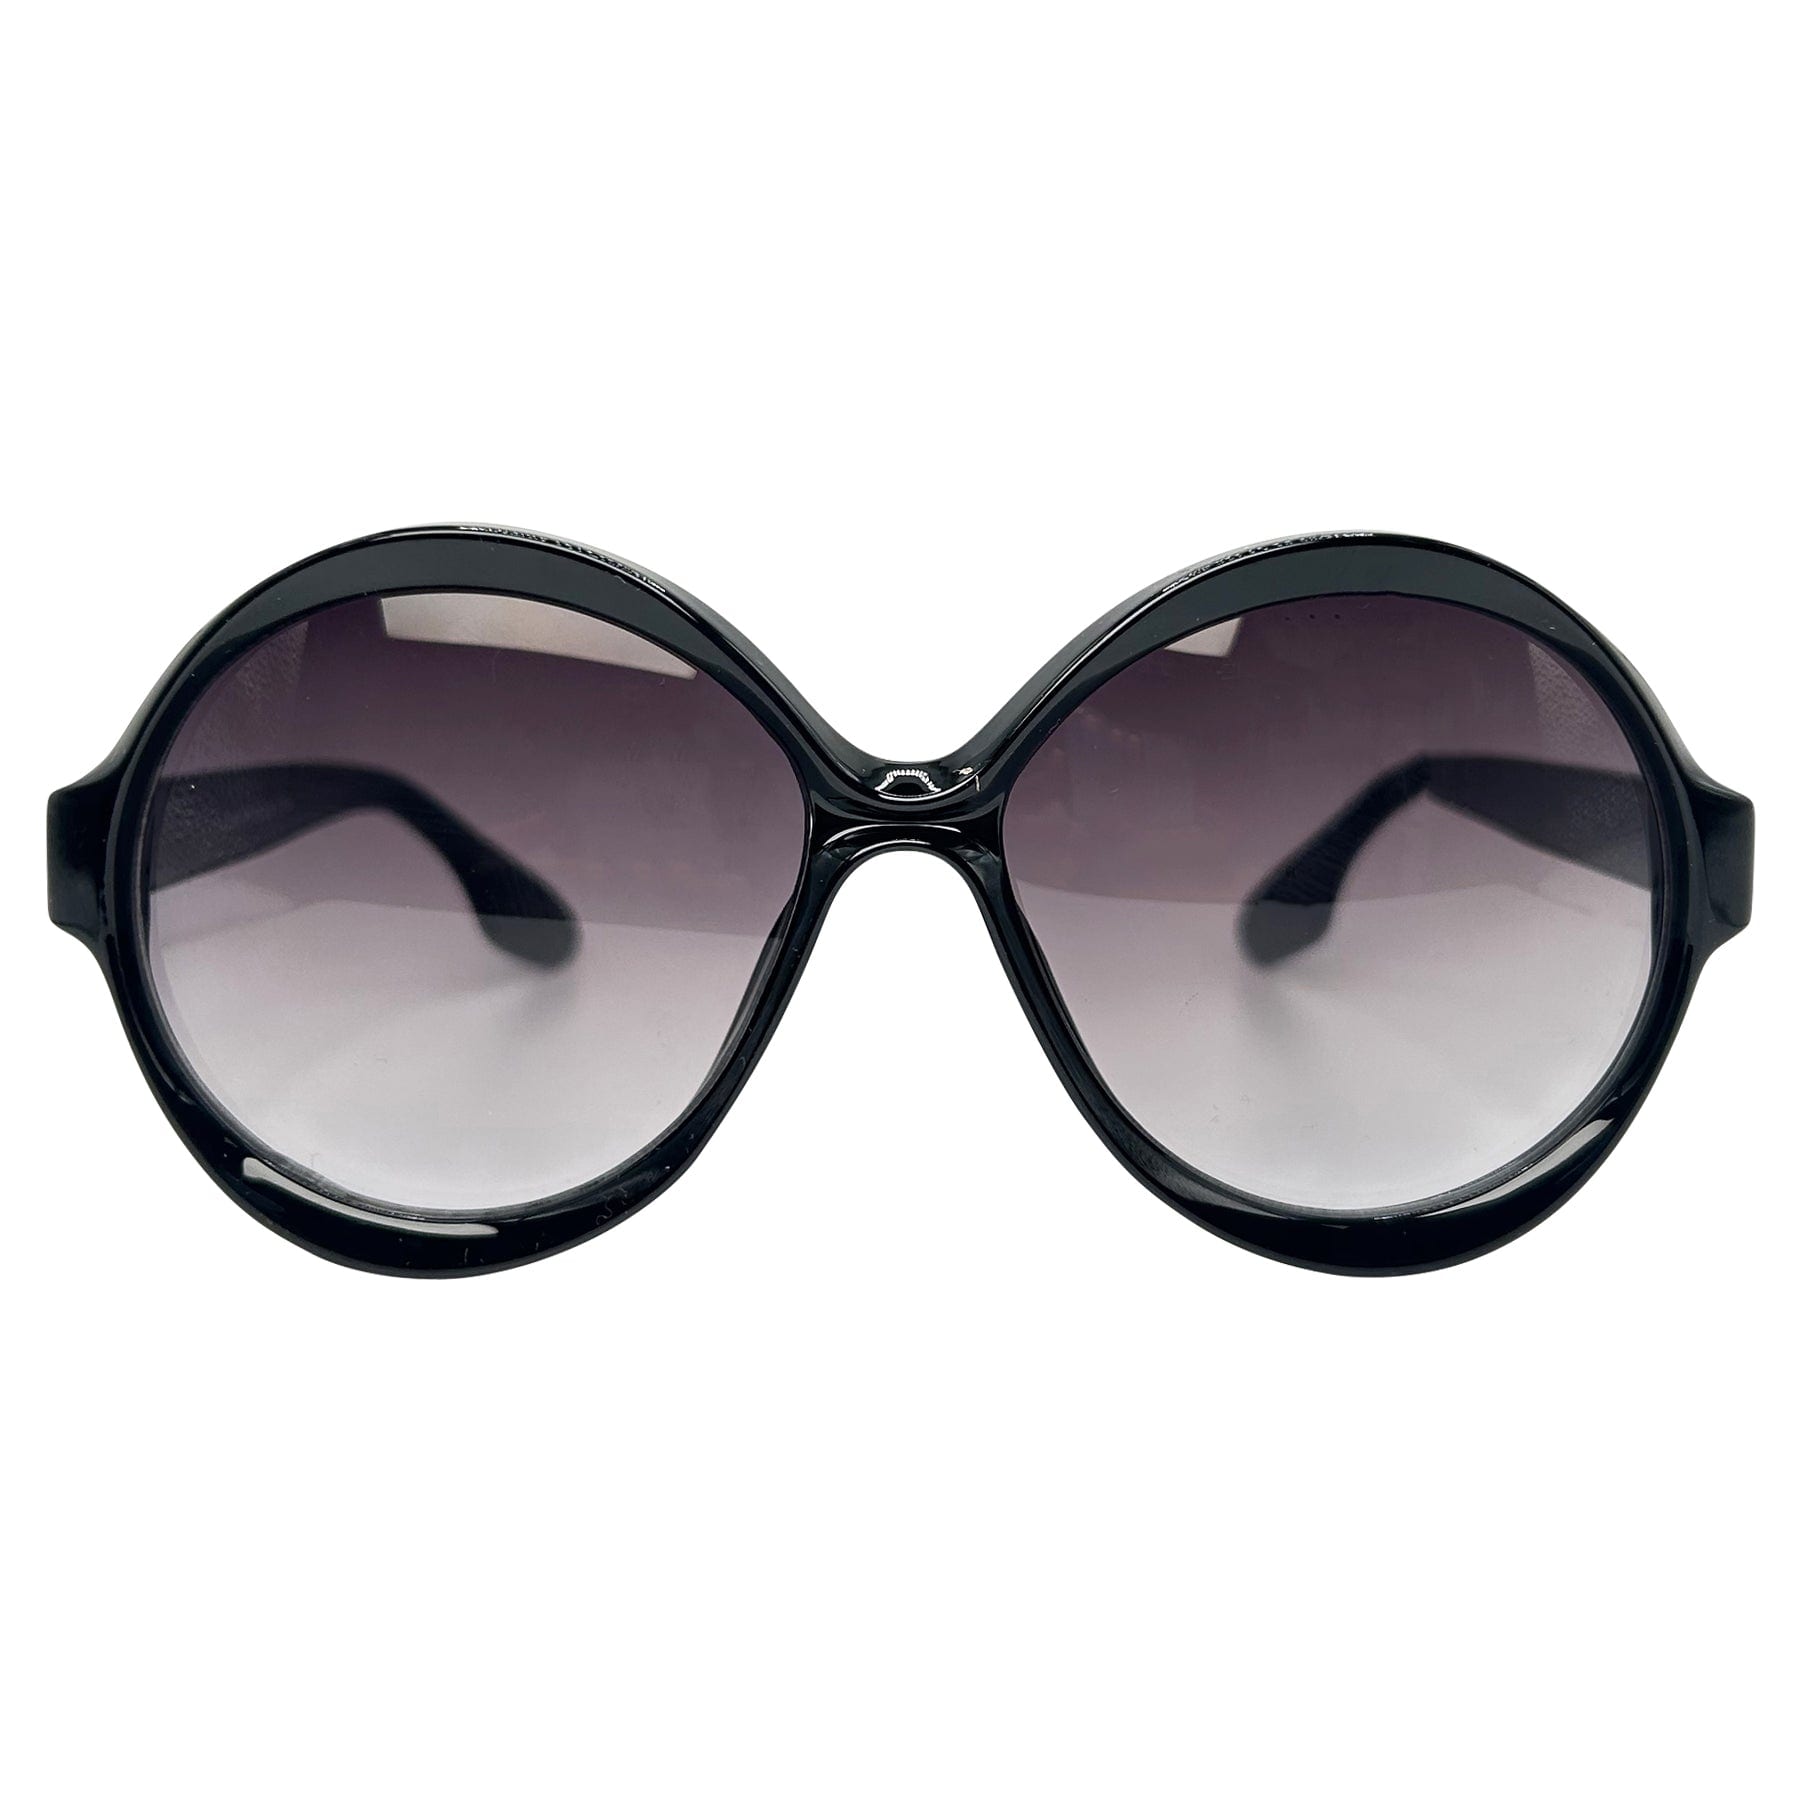 70s inspired boho chic round sunglasses